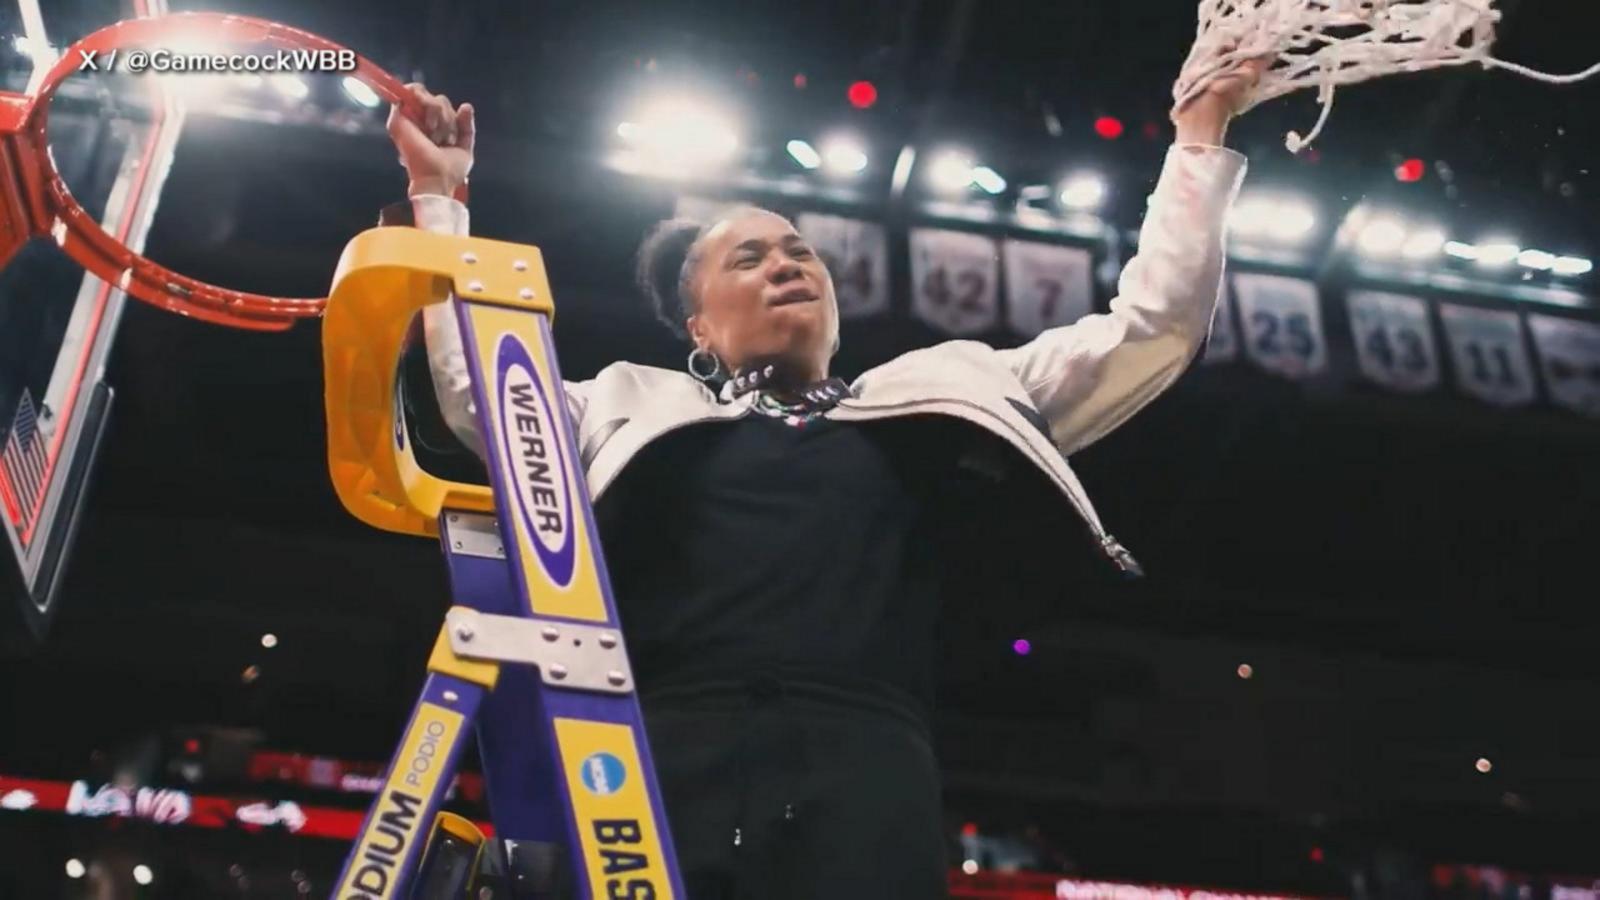 VIDEO: South Carolina beats Iowa to win women’s NCAA championship